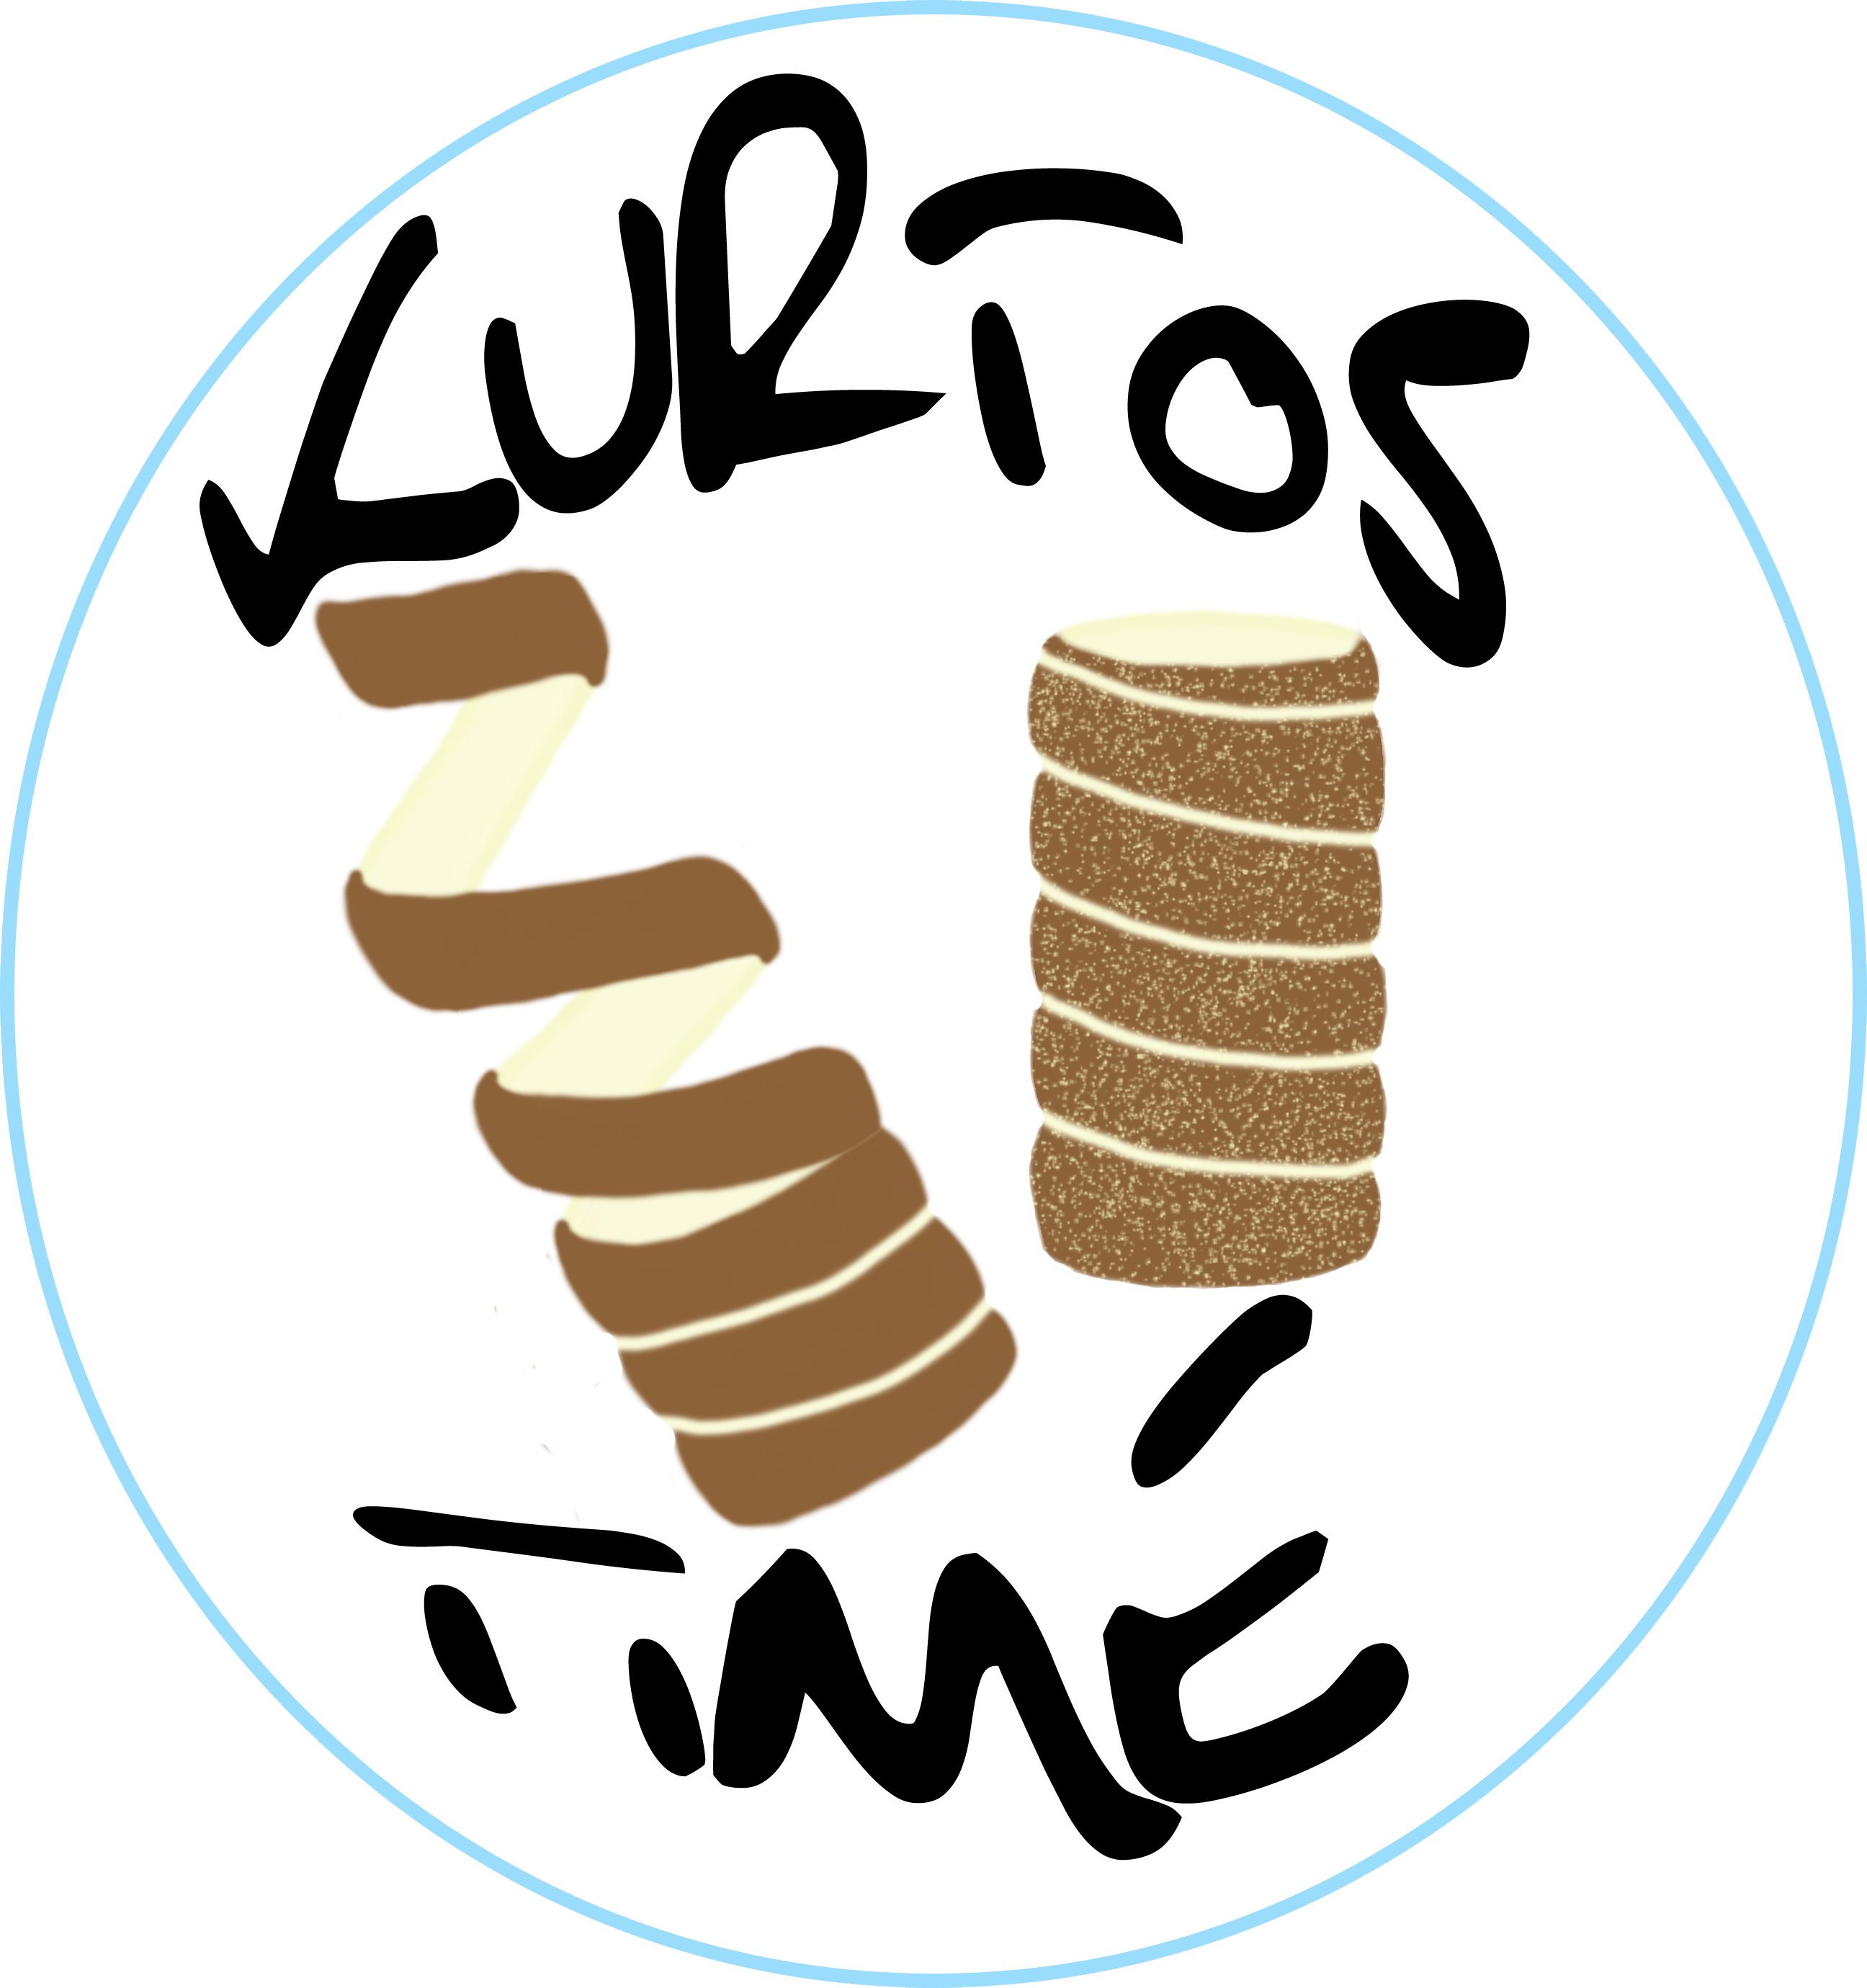 Kurtos Time Logo